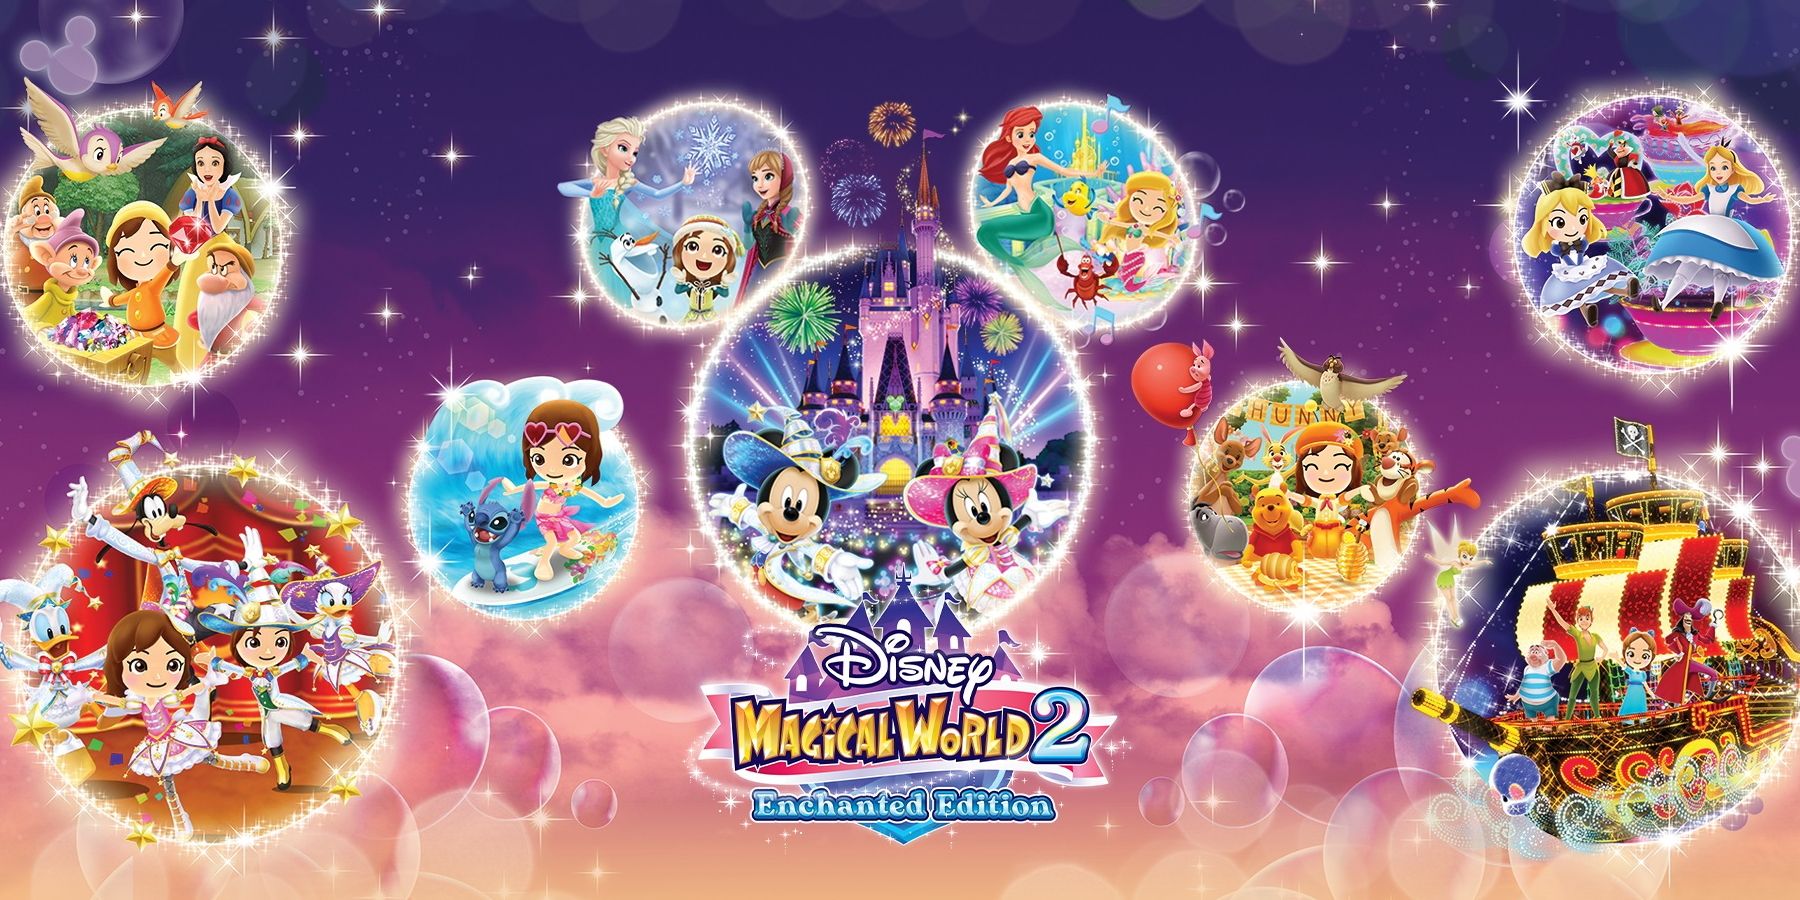 Disney Magical World 2: Enchanted Edition, der kommer til at skifte i år